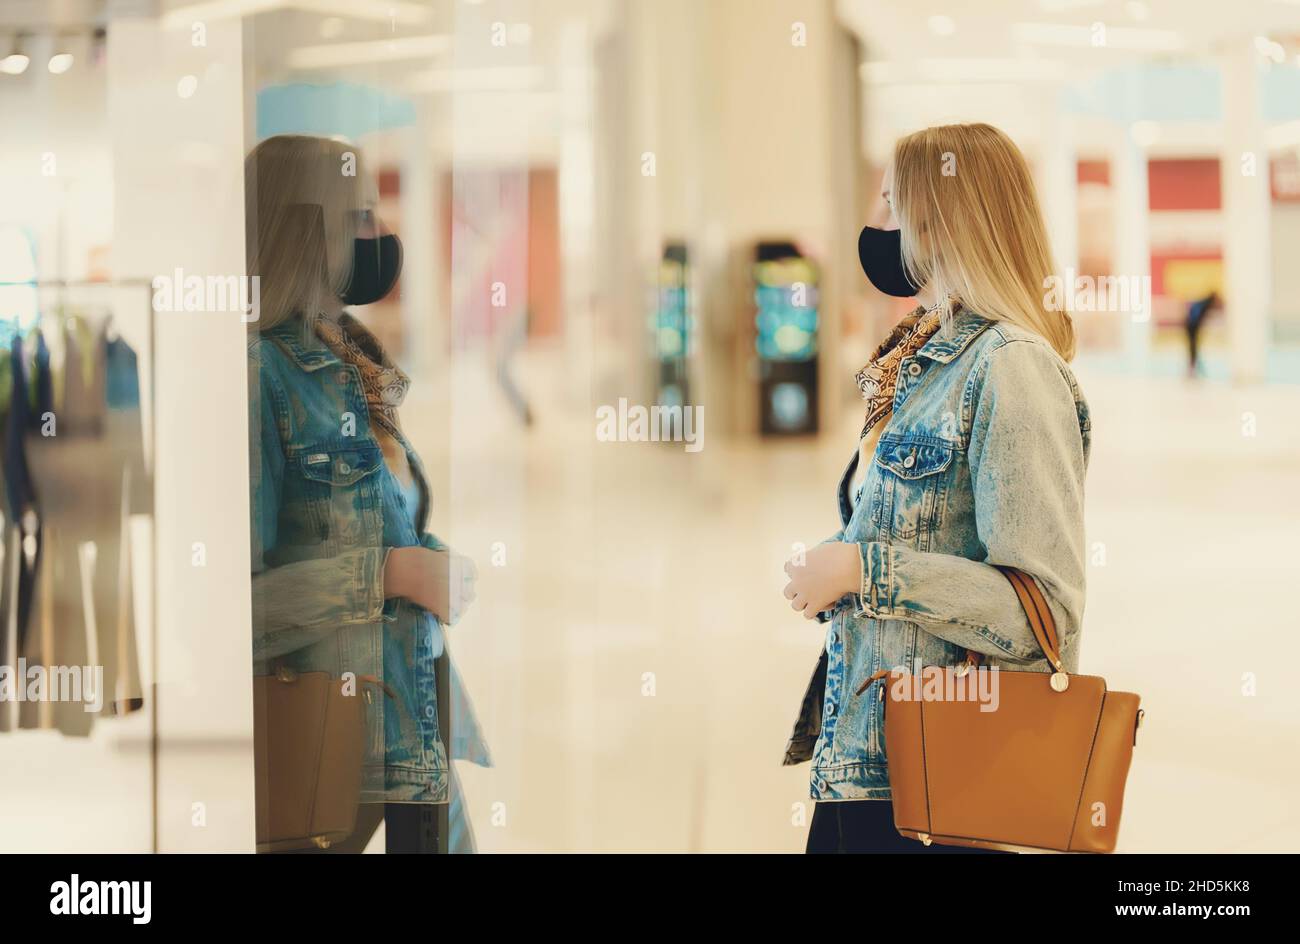 Weibliche Touristen in das Schaufenster der Clothing Store suchen. Stockfoto